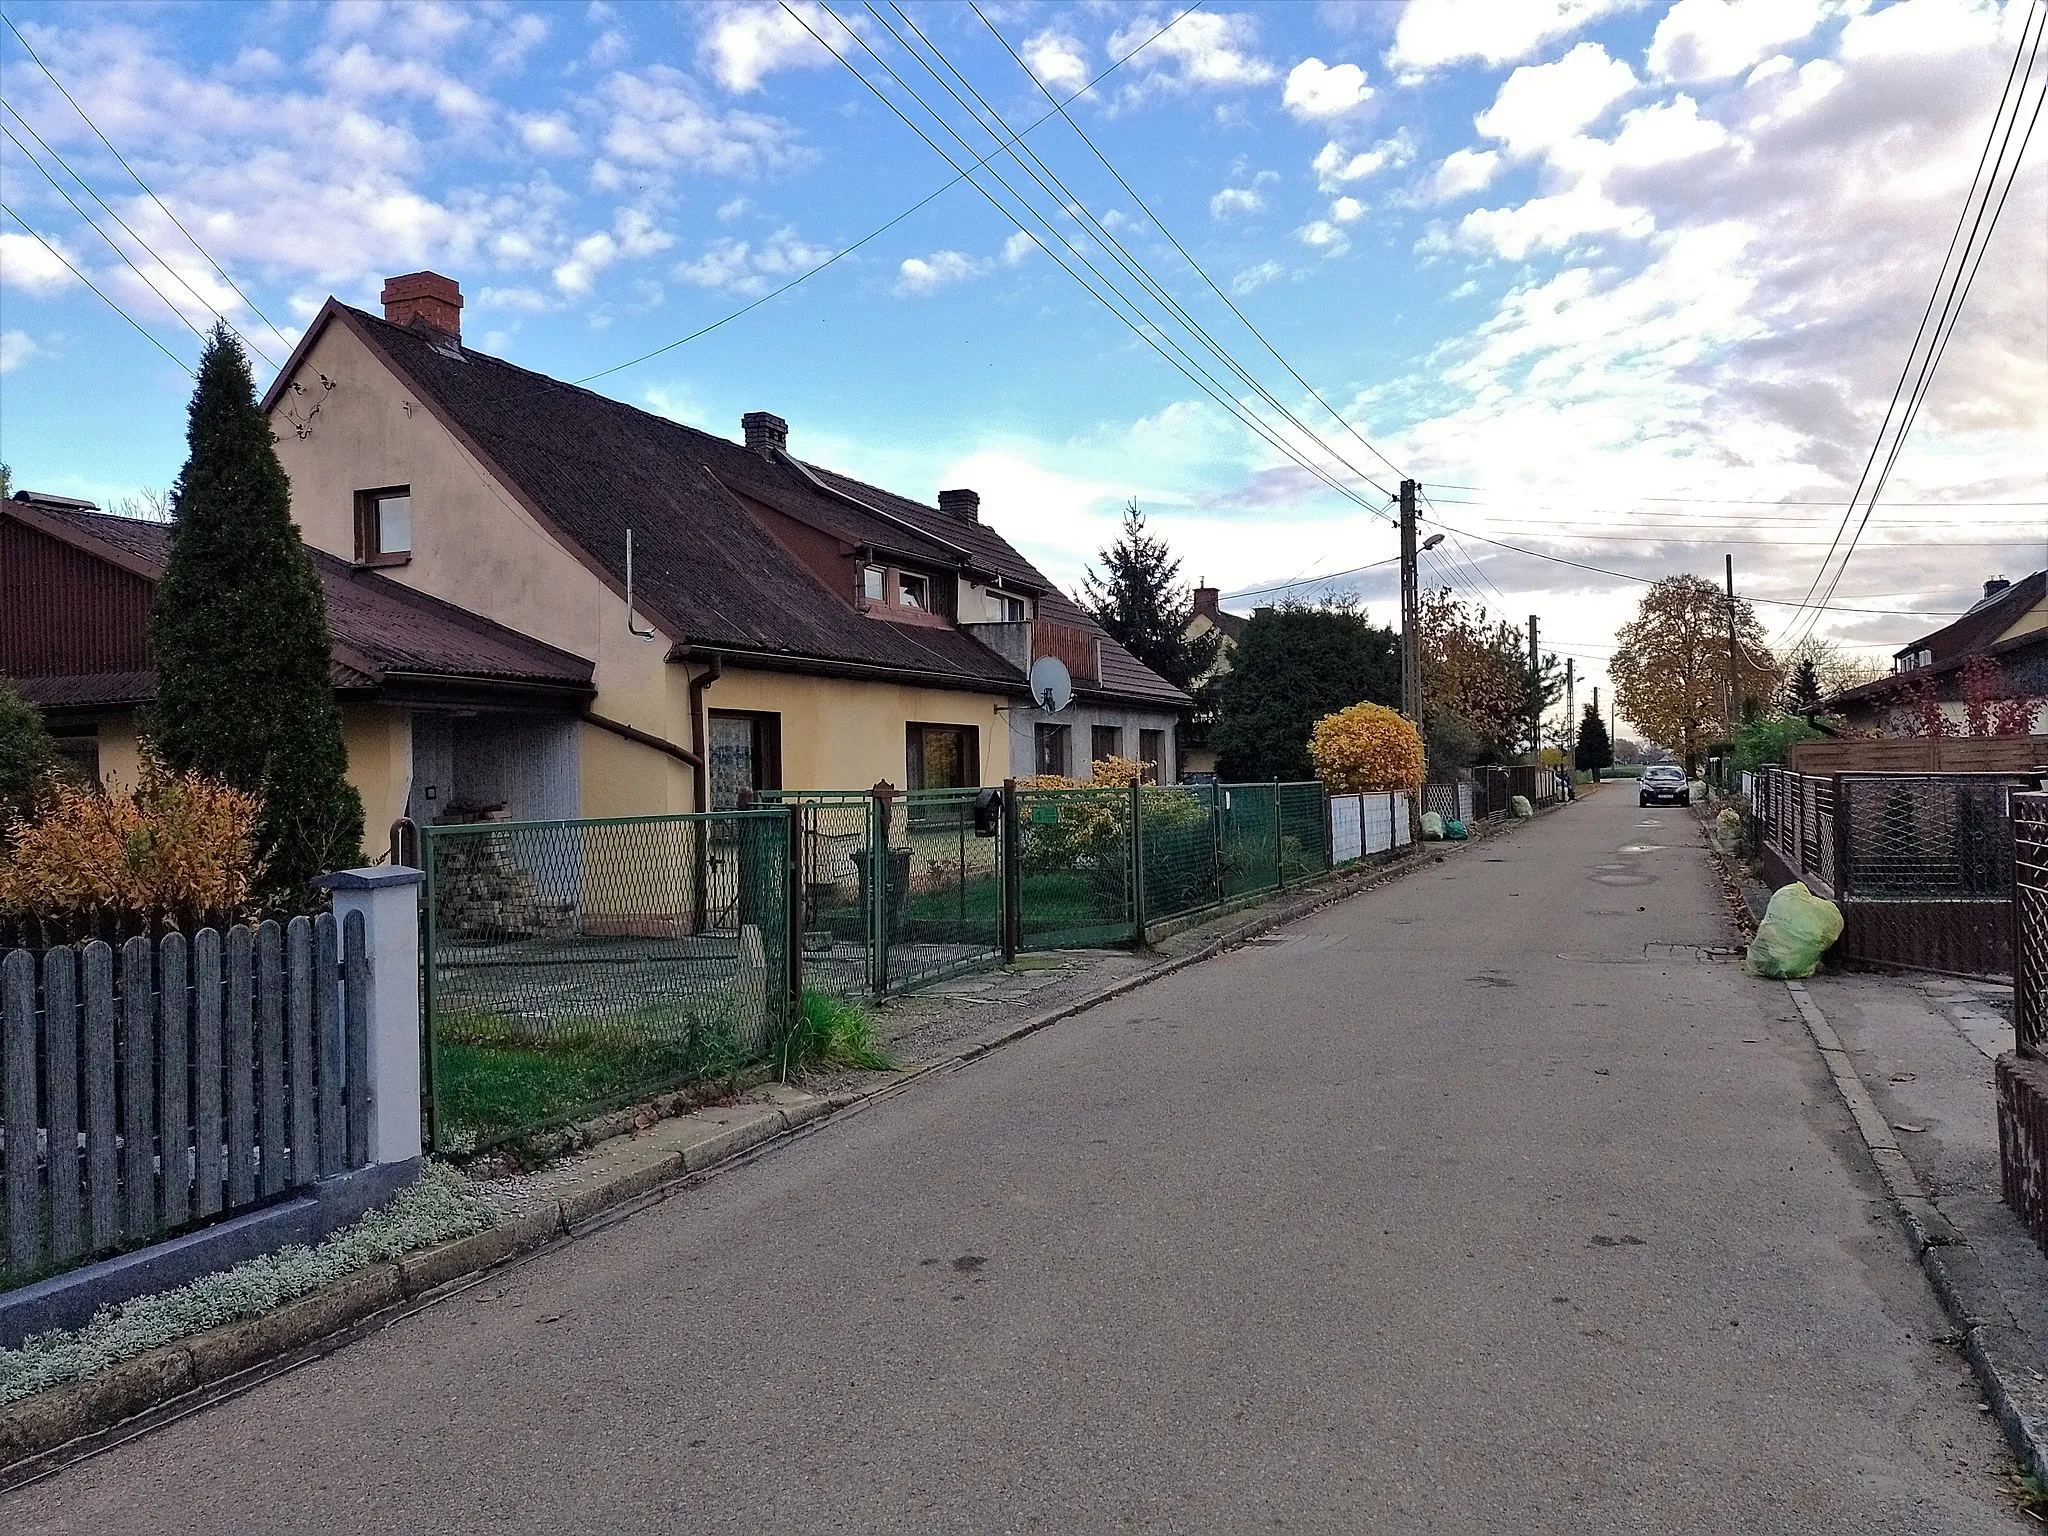 Photo showing: Podwórkowa Street in Poddębina, part of the village Zabełków, Upper Silesia, Poland